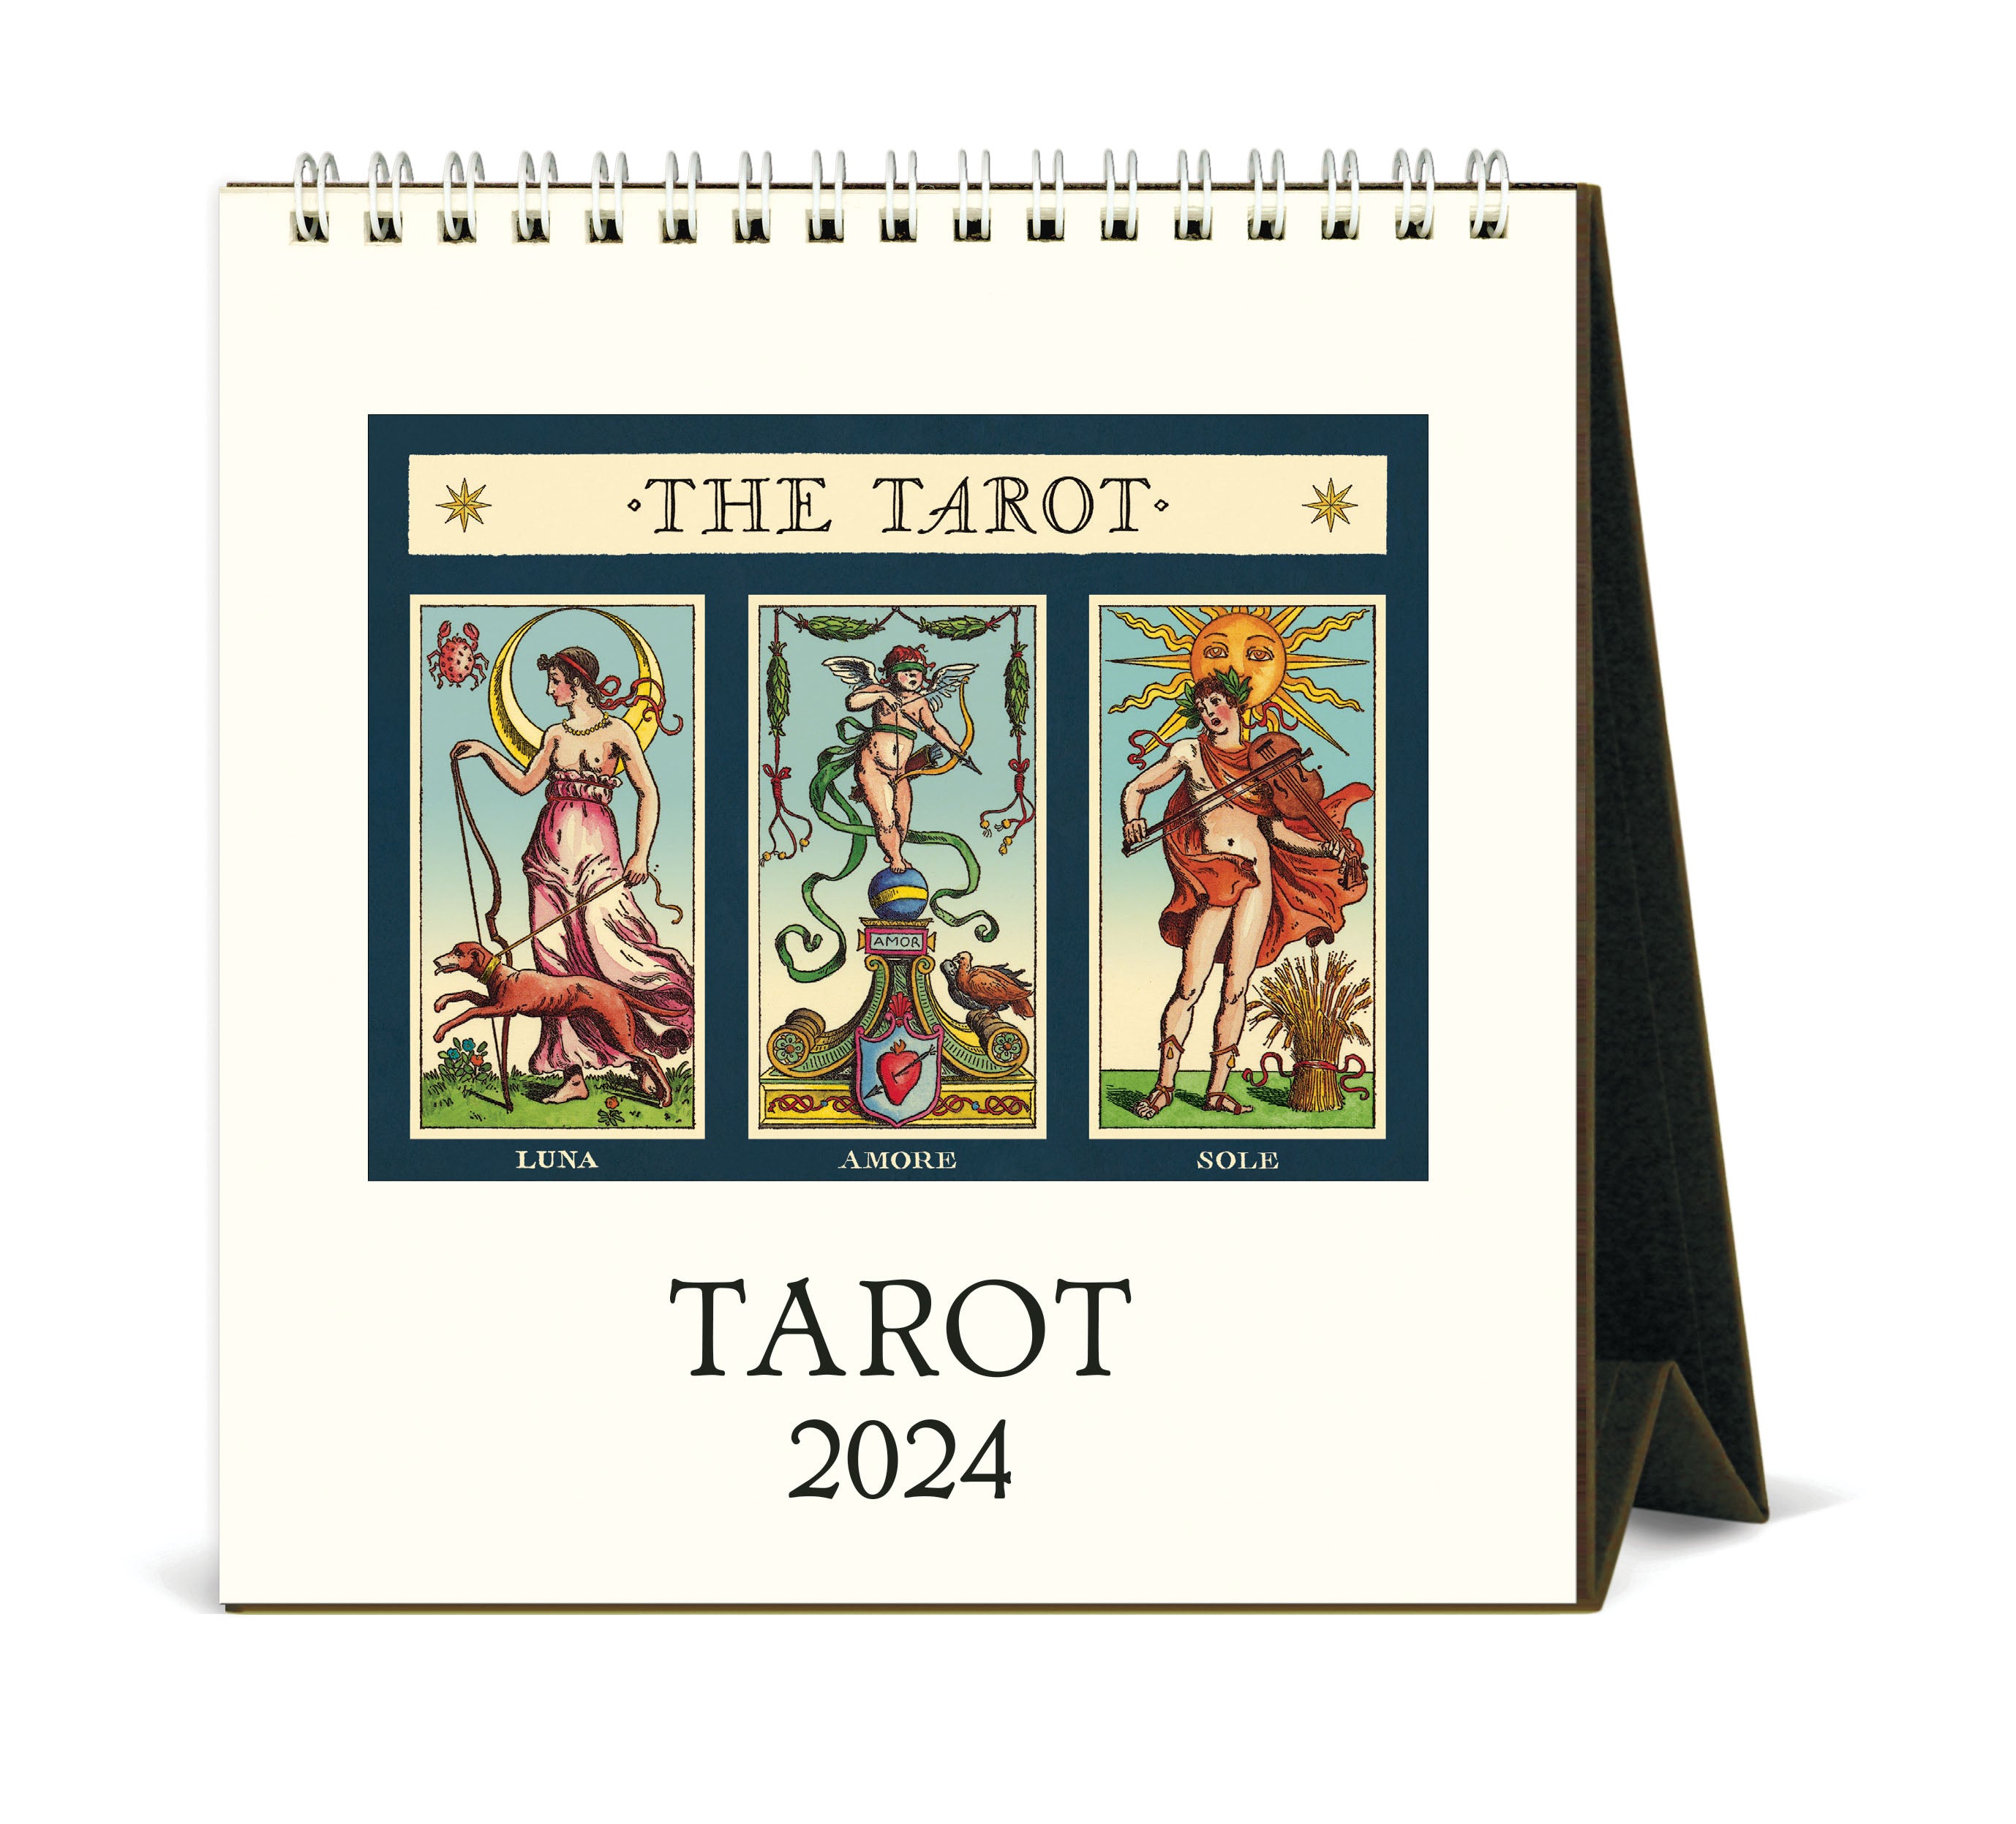 Image of 2024 Cavallini & Co. Tarot Desk Calendar